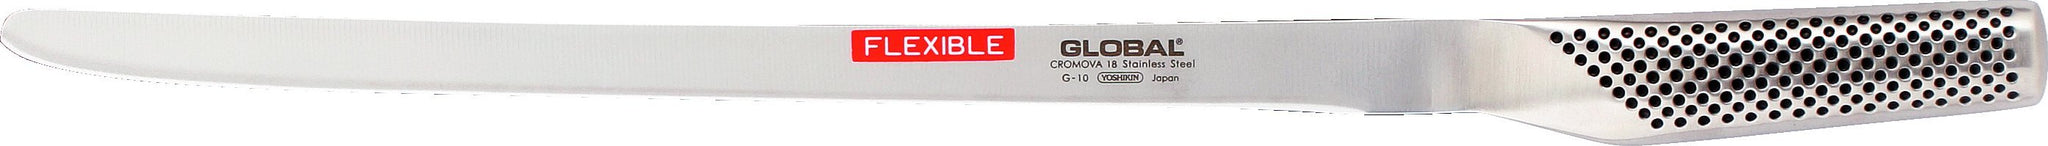 Global - 12.25" Flexible Ham/Salmon Slicer/Knife - G10